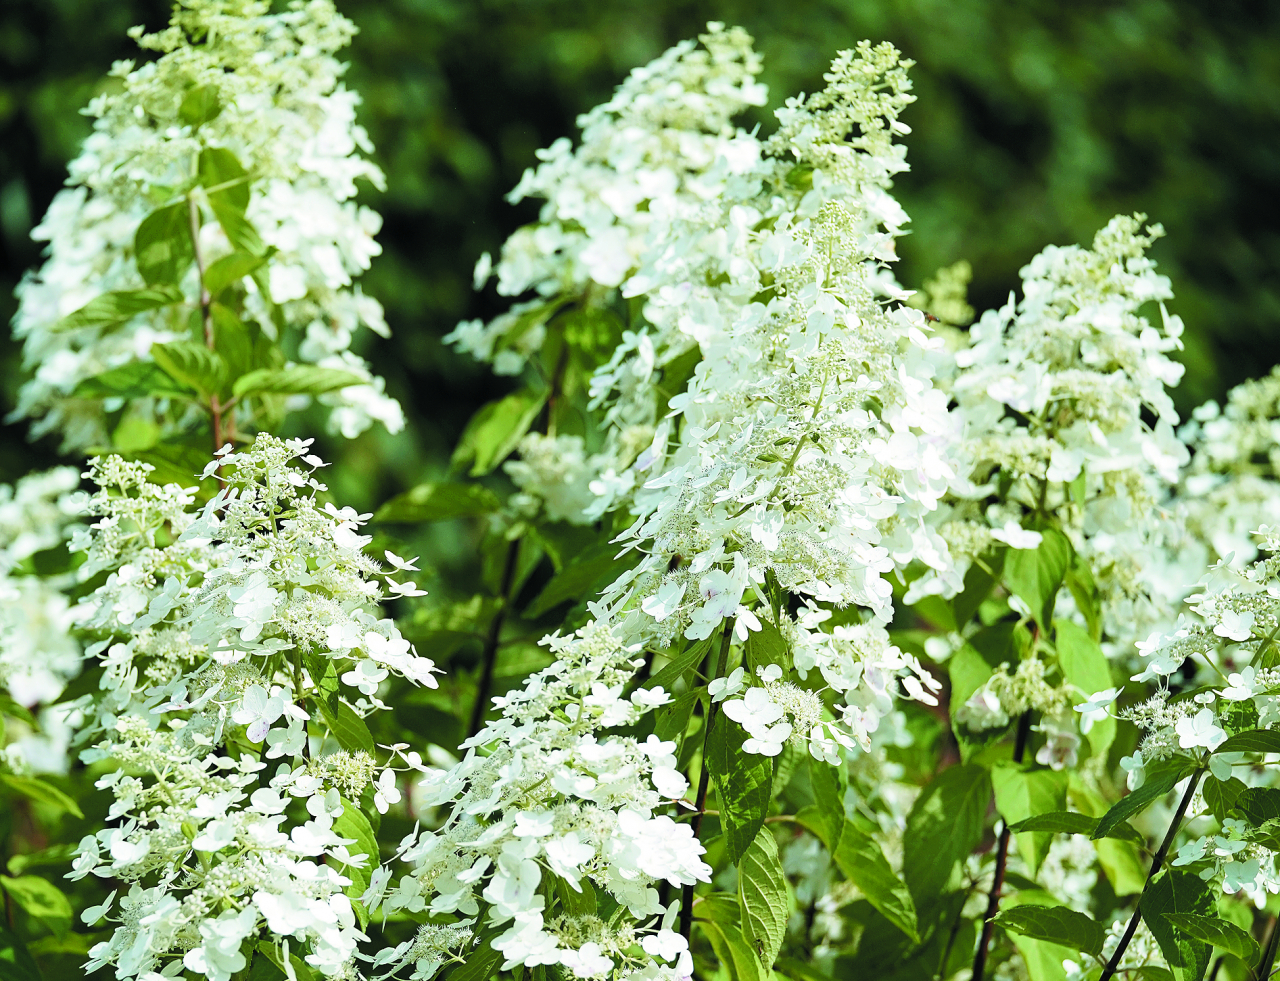  Kyushu. Smalkās, aptuveni 20 cm garās skarās sakārtotie baltie un smaržīgie (!) ziedi pievilina tauriņus. Vainags ir krūmveida, izplests. Var sasniegt 2–3 m augstumu. Ļoti izturīga šķirne.